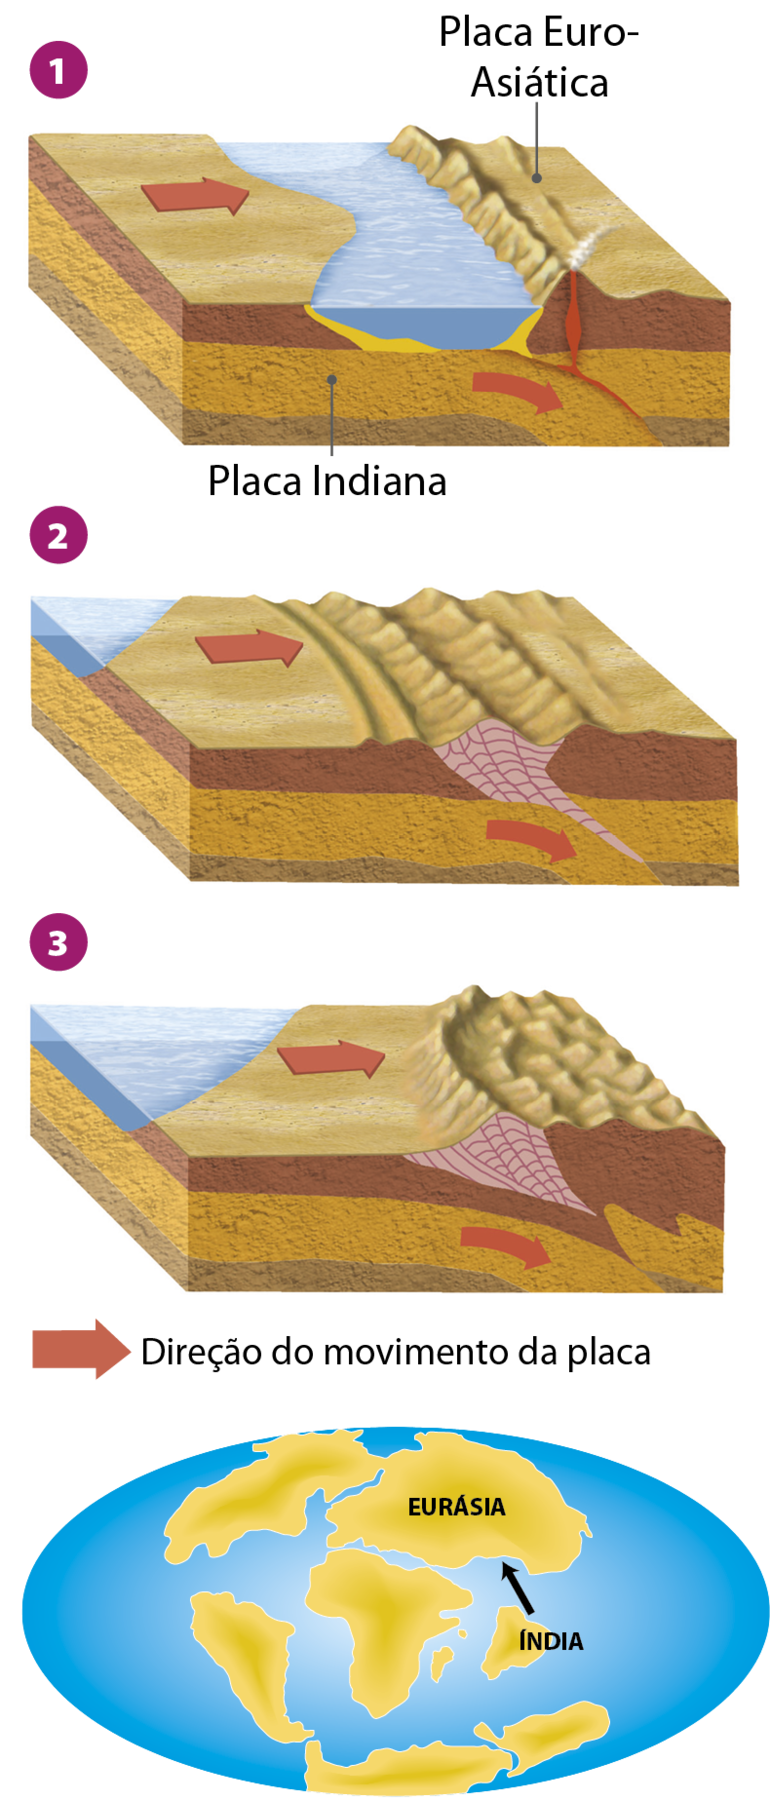 Ilustração. Formação do Himalaia. Sequência de 3 blocos diagramas mostrando a formação do Himalaia. Ilustração 1: na superfície, cadeia montanhosa à direita e oceano ao centro; no subterrâneo, placa Indiana, à esquerda, entrando por baixo da placa Euro-Asiática, à direita. Setas vermelhas indicam o movimento das placas e na área de atrito entre ela, há magma próximo à superfície na altura da cordilheira. Ilustração 2: segunda ilustração, mantem-se uma seta vermelha na superfície da Placa Tectônica Indiana no sentido da esquerda para a direita, indicando que a Placa se move em direção à Placa Euro-Asiática. Nesta figura, o mar não está mais no meio das duas placas tectônicas, mas foi deslocado para o canto superior esquerdo. Agora, a compressão entre as duas placas tectônicas geram novas formações montanhosas que se concentram no centro da figura, onde antes estava o mar. Ilustração 3: Na terceira imagem da série, o mar ocupa a maior parte do canto superior esquerdo, indicando que as terras da Placa Indiana avançaram ainda mais sobre a Placa Euro-Asiática. Há uma seta vermelha na superfície que indica que continua o movimento da Placa Indiana no sentido da esquerda para a direita. Nessa figura, há uma cadeia de montanhas maior do que na segunda imagem, demonstrando que o choque entre as placas foi capaz de gerar uma cordilheira. Nas camadas abaixo da superfície ainda há a seta na diagonal indicando que a placa Indiana está ainda mais curva e a Placa Euro-Asiática está soerguida. Há, ainda, uma quarta ilustração da série, mostrando a distribuição de terras continentais, sendo duas delas a Eurásia e a Índia. Há uma seta que indica que a Índia se move em direção à Eurásia.